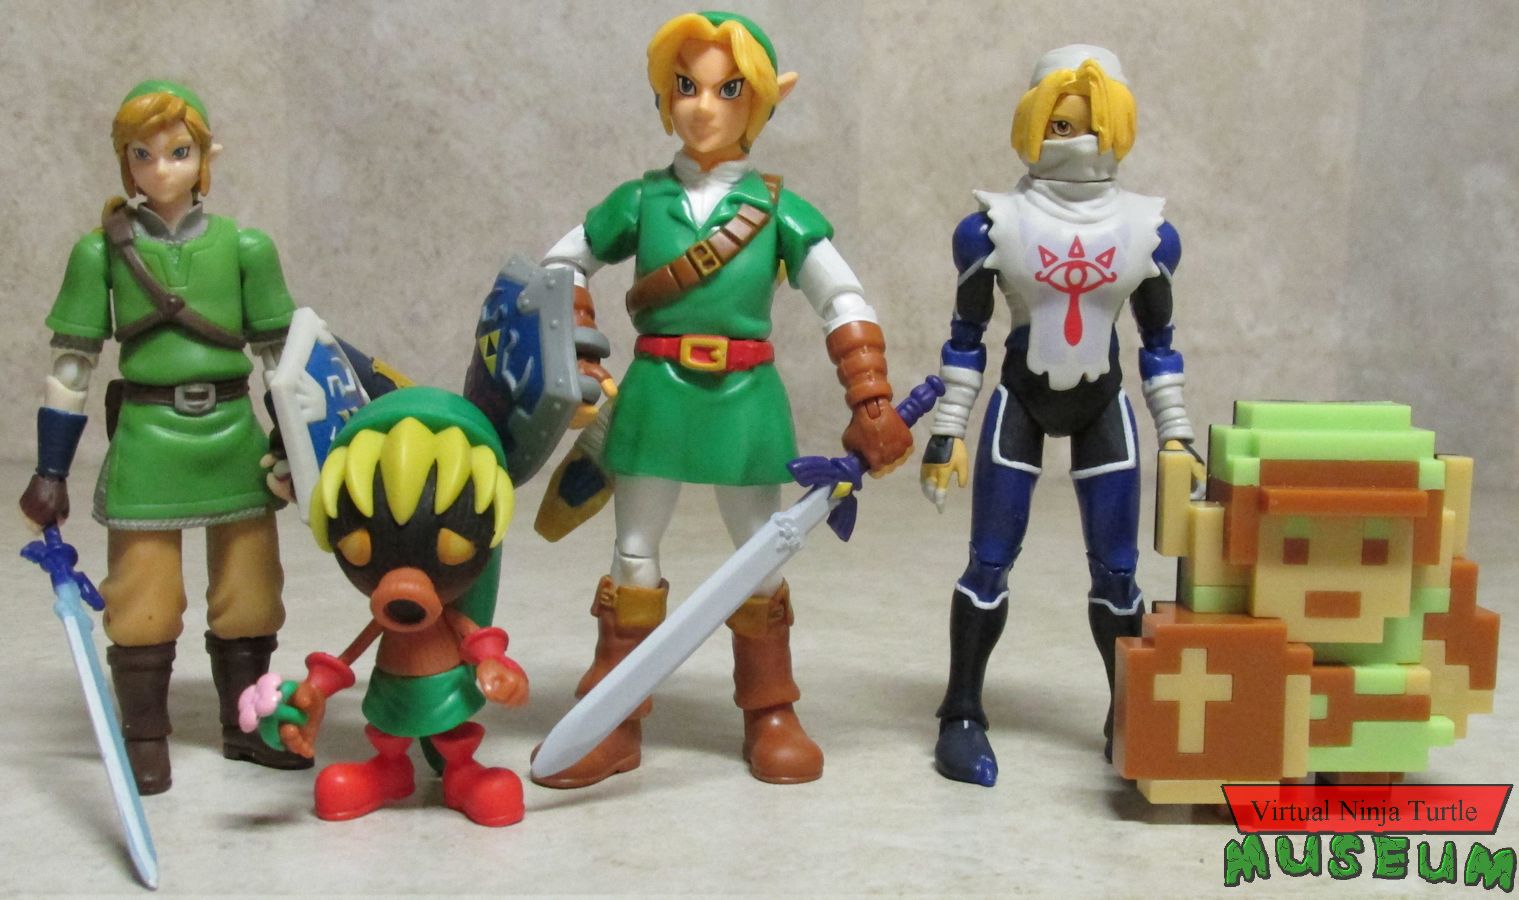 Legend of Zelda figures